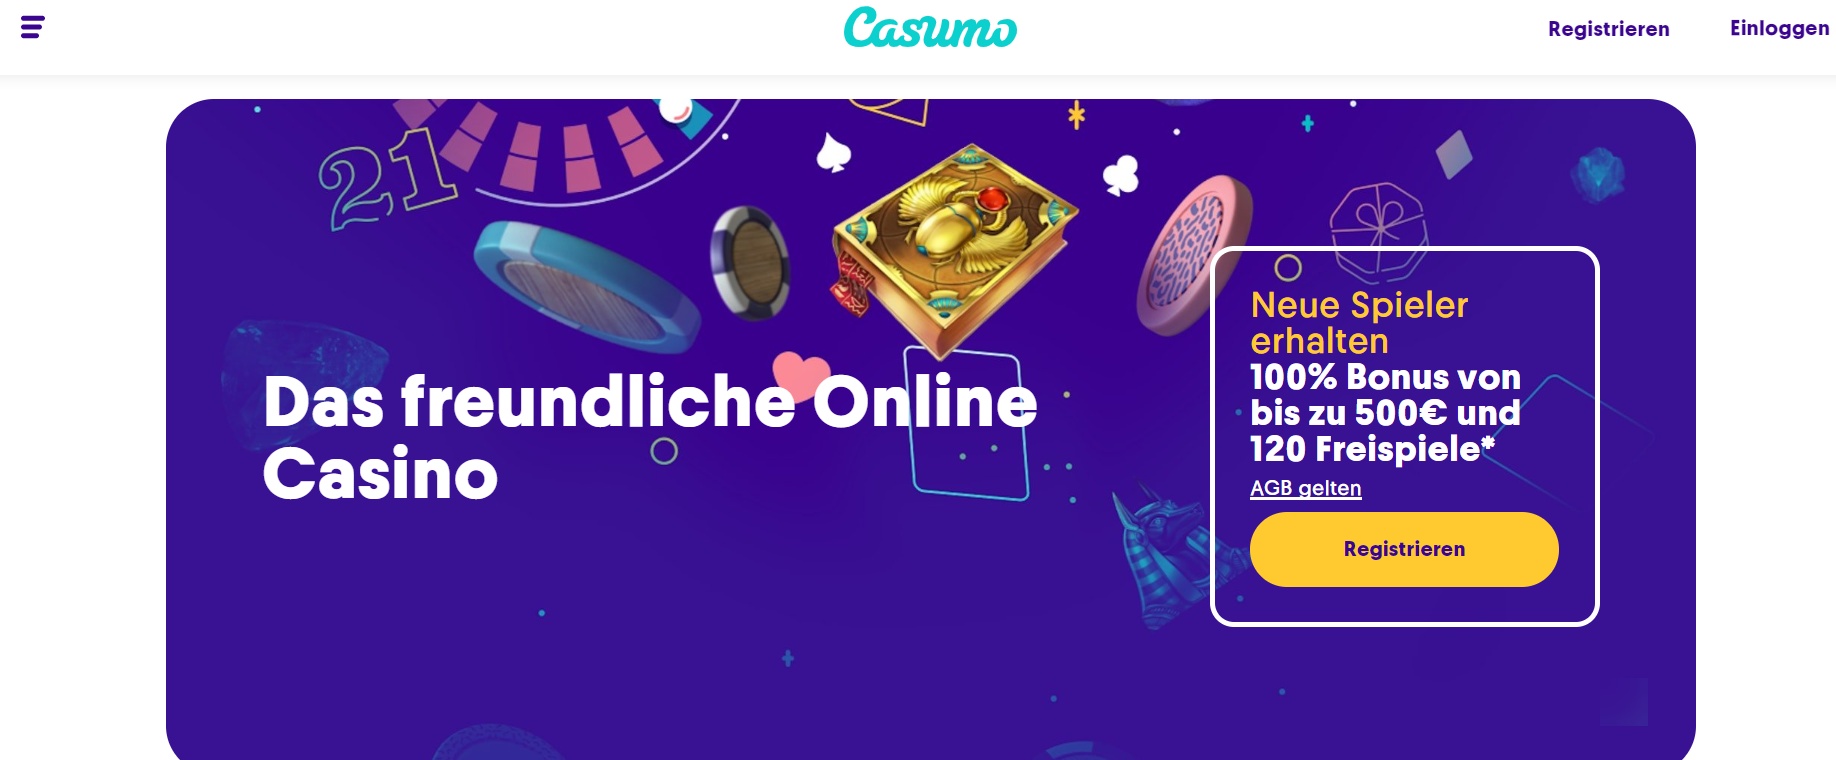 Ein Screenshot vom Casino Casumo